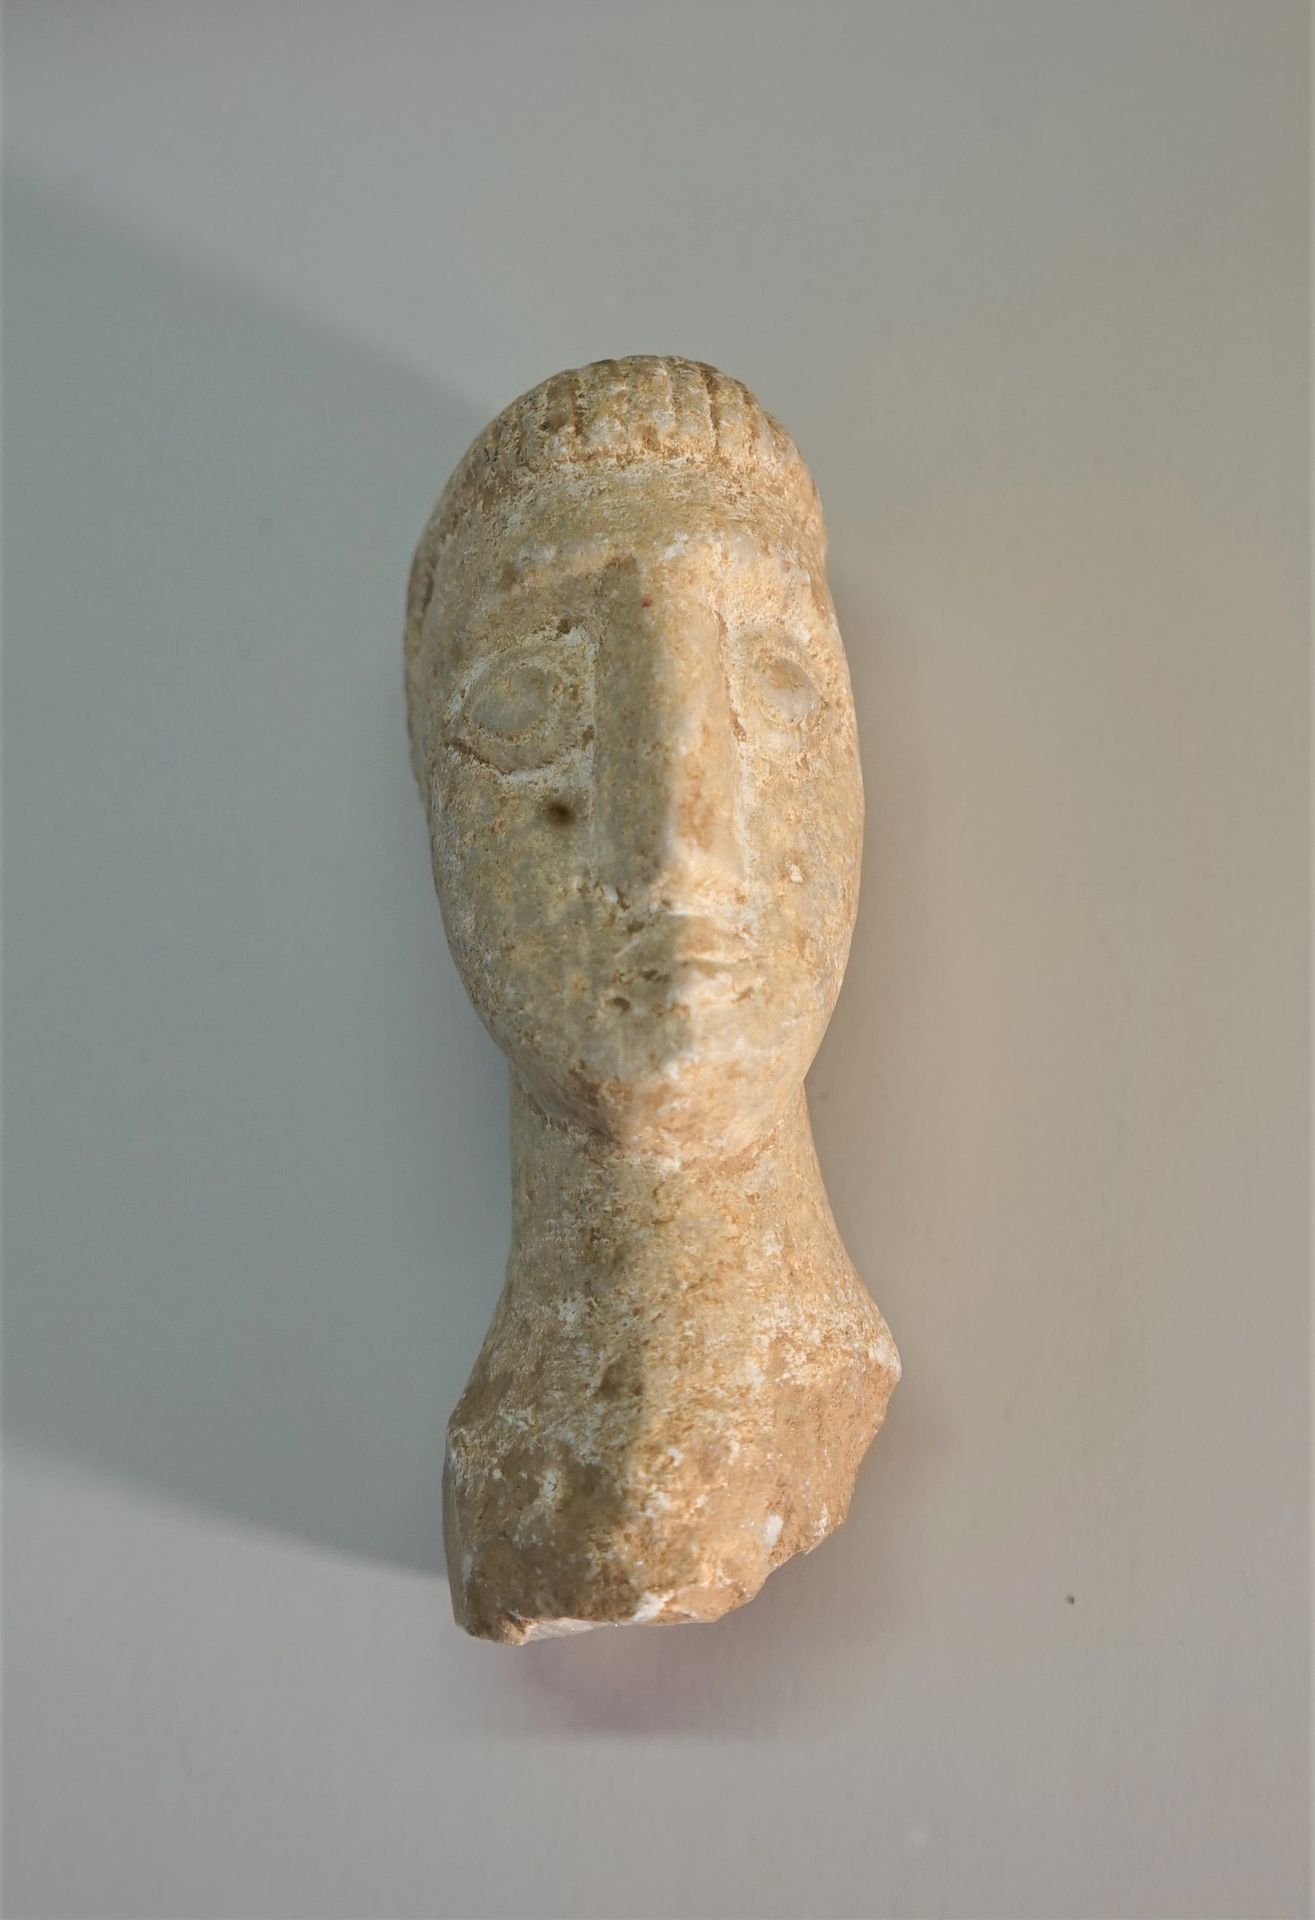 Null Kopf aus weißem Stein (Marmor) im keltischen Stil.

11cm